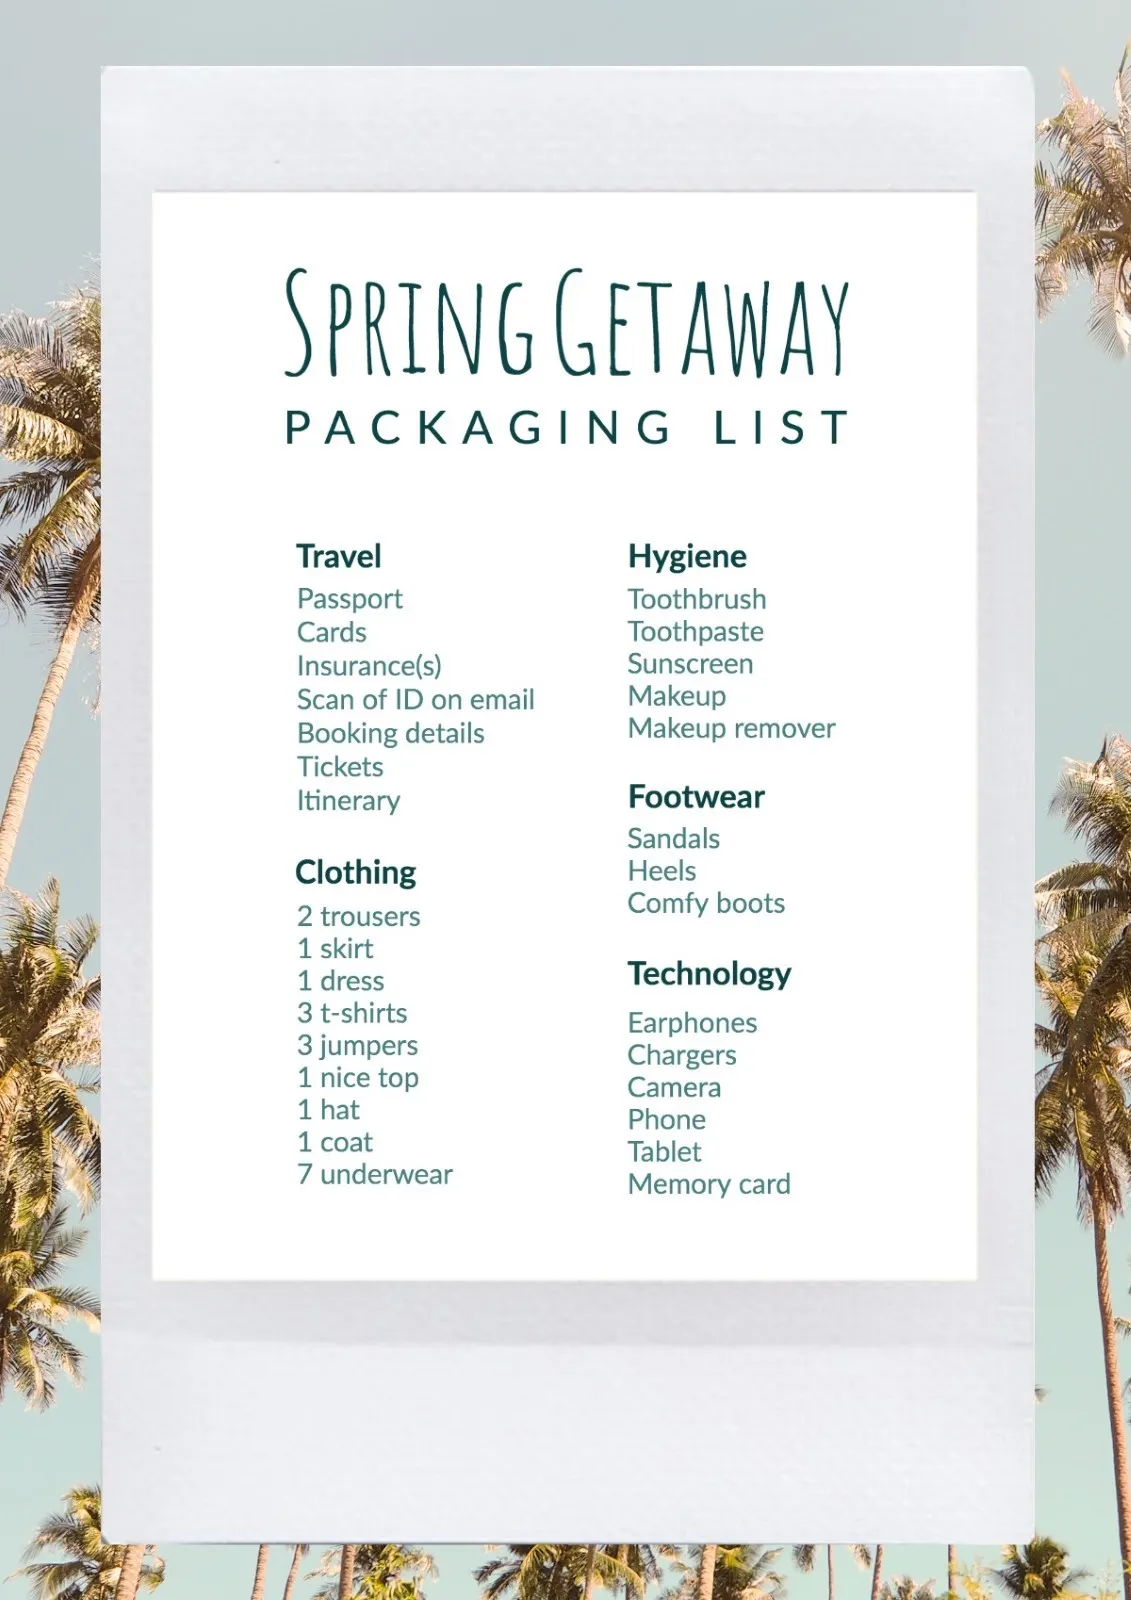 Spring getaway packaging list